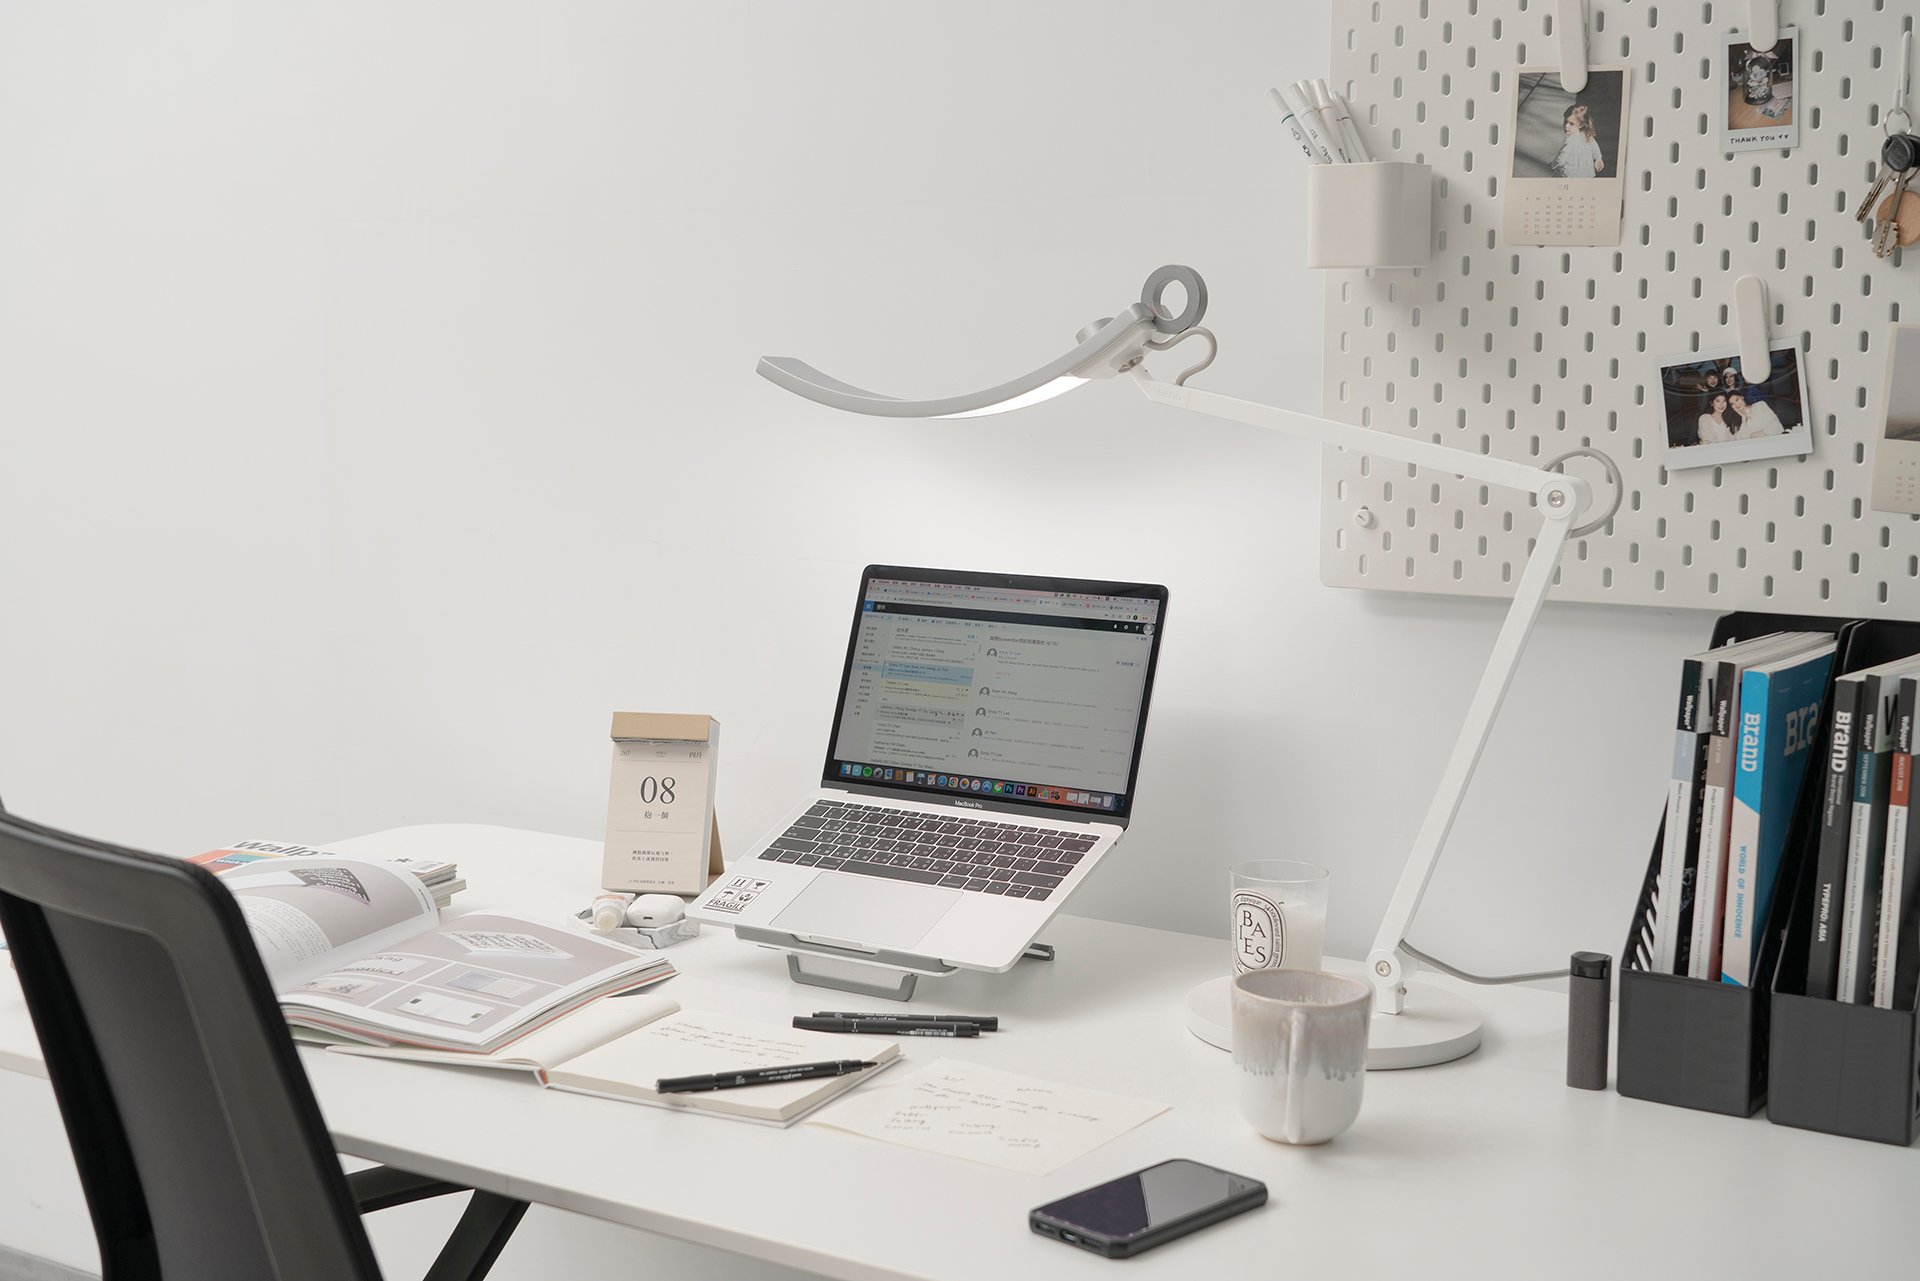 WiT e-Reading Desk Lamp